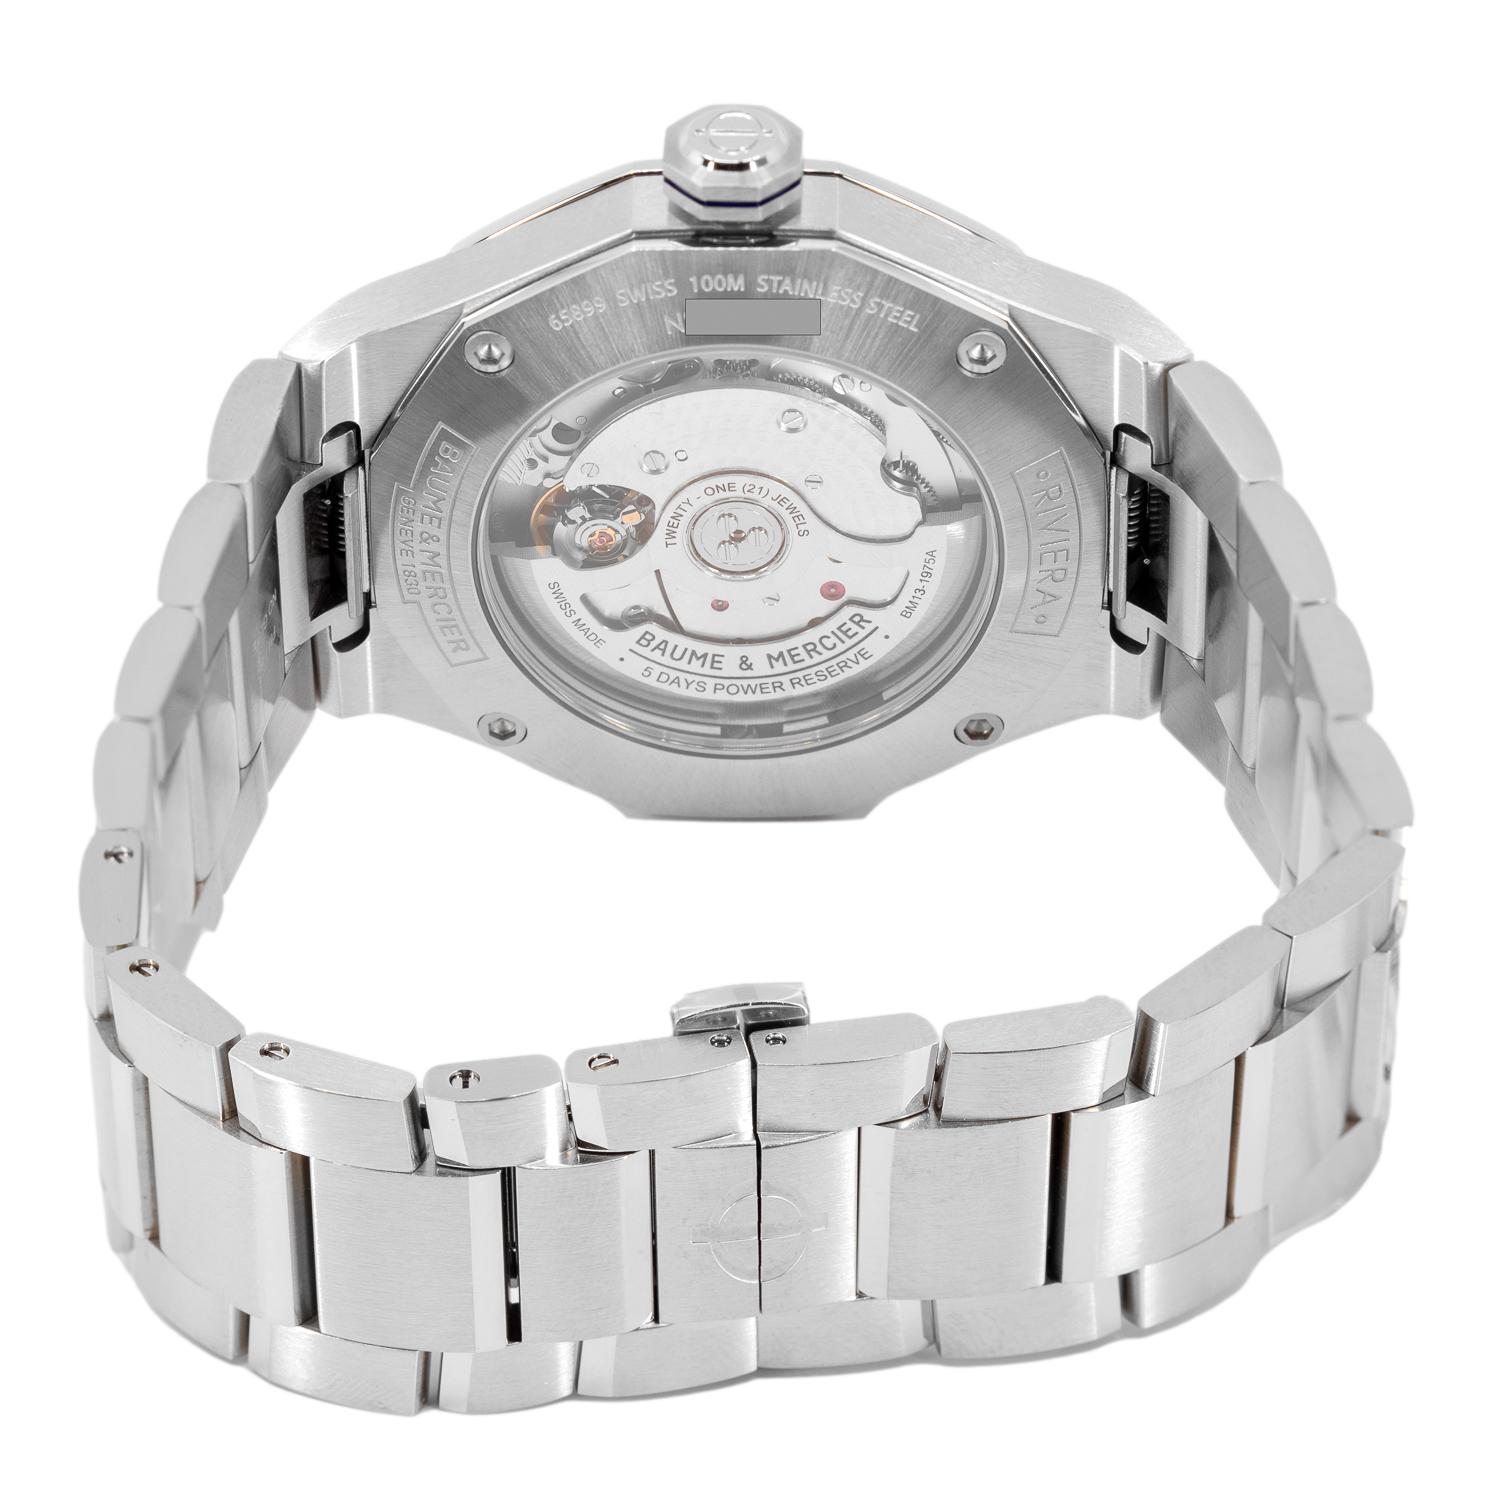 M0A10616-Baume & Mercier Men's M0A10616 Riviera Blue Dial Watch